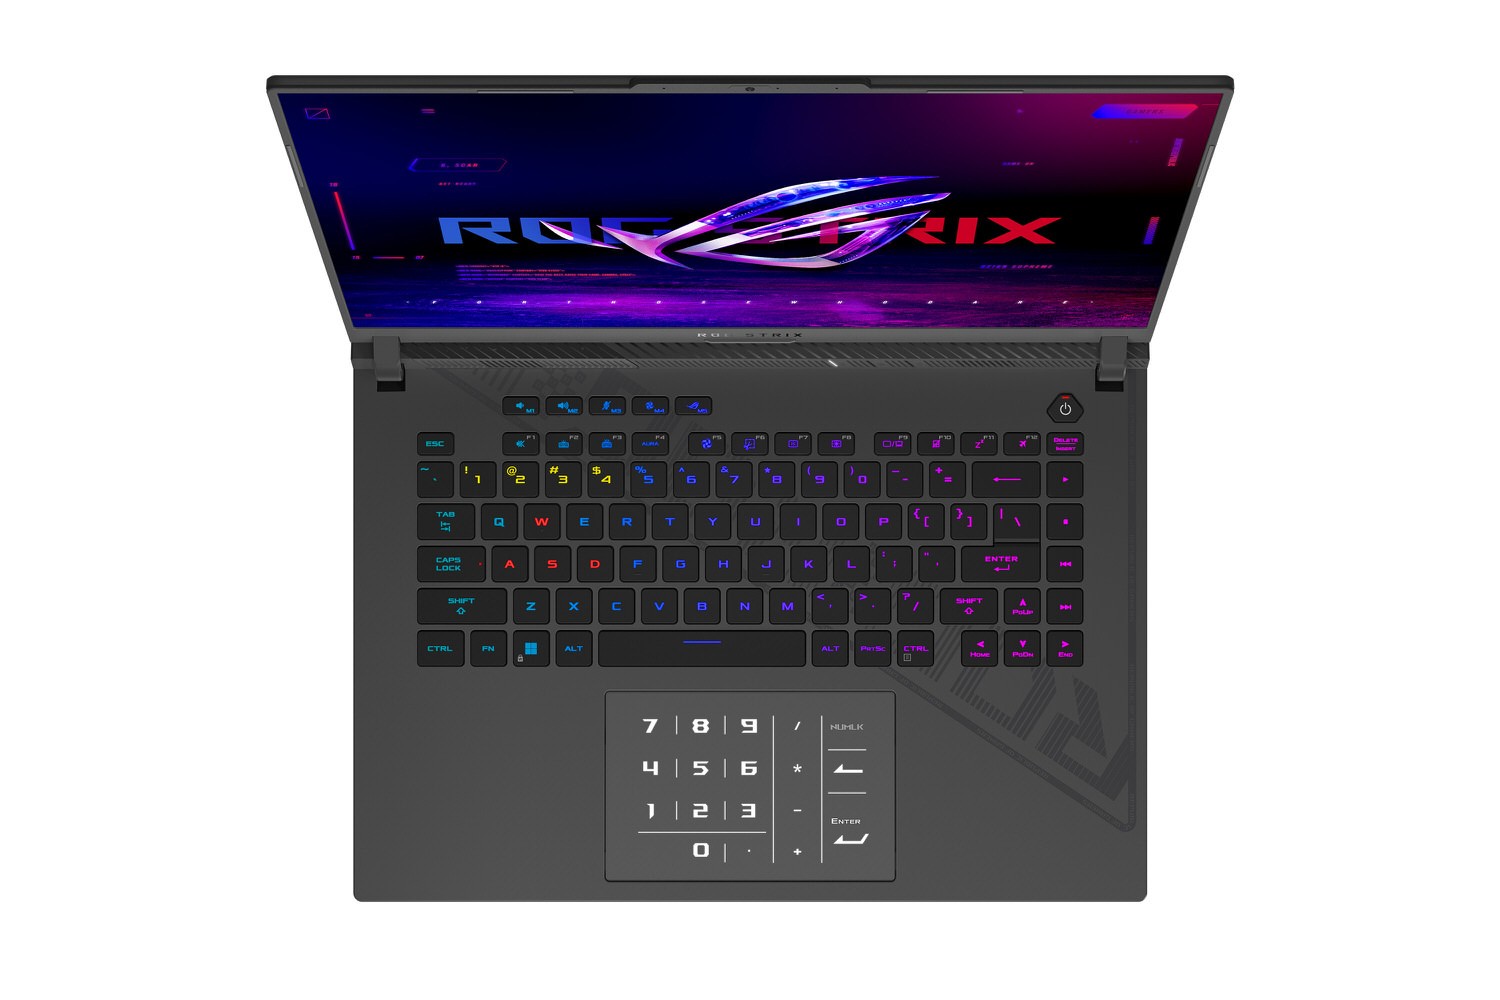 Strix G16 are iluminare RGB per tastă și NumberPad